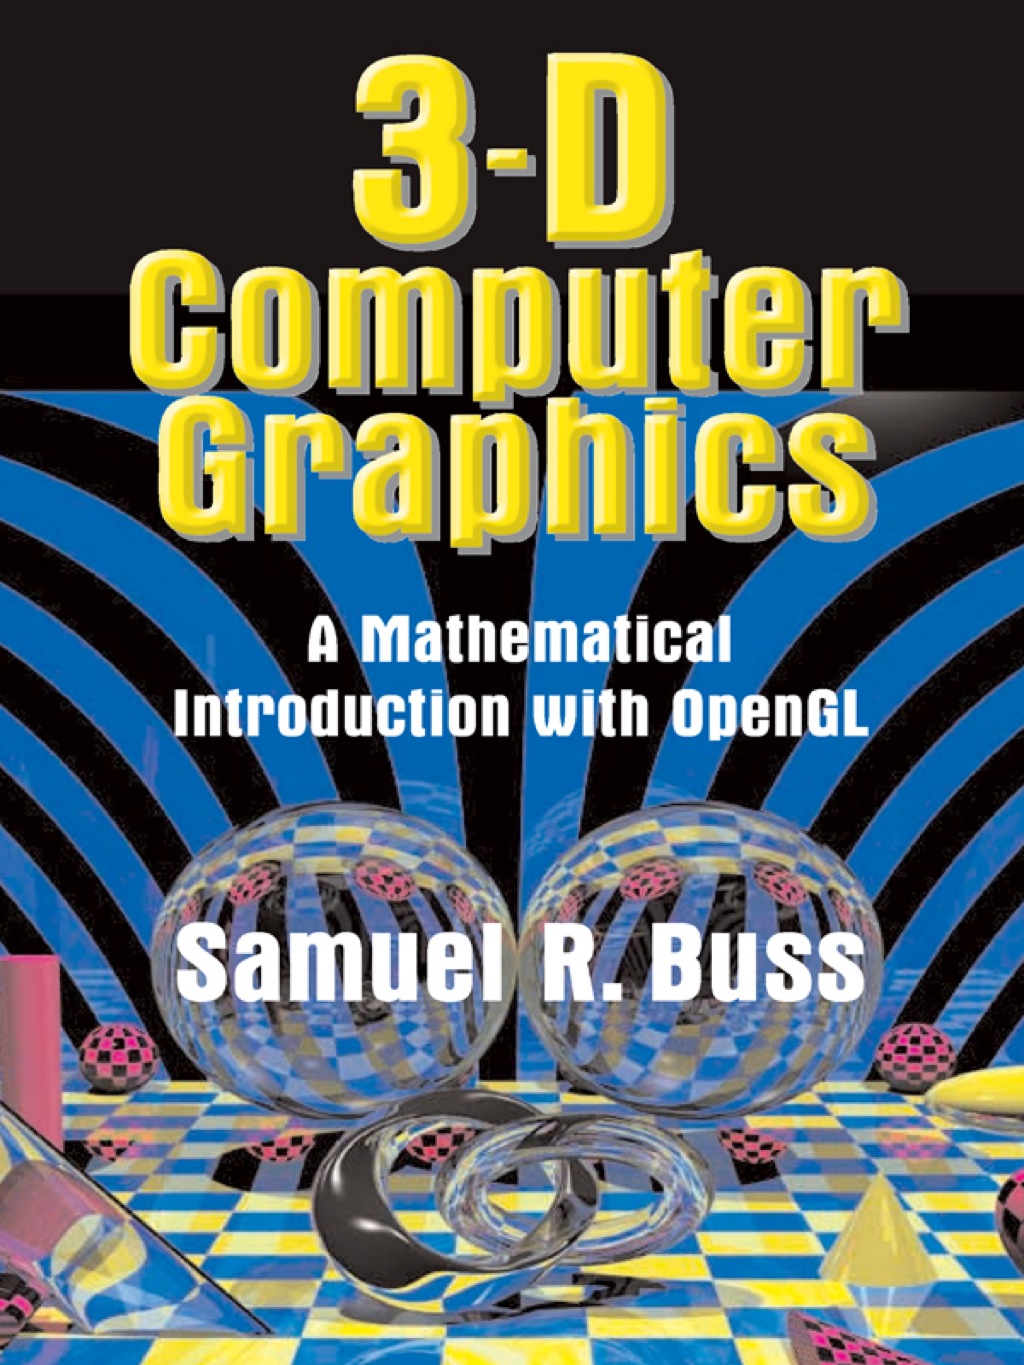 3D Computer Graphics (eBook) - Samuel R. Buss